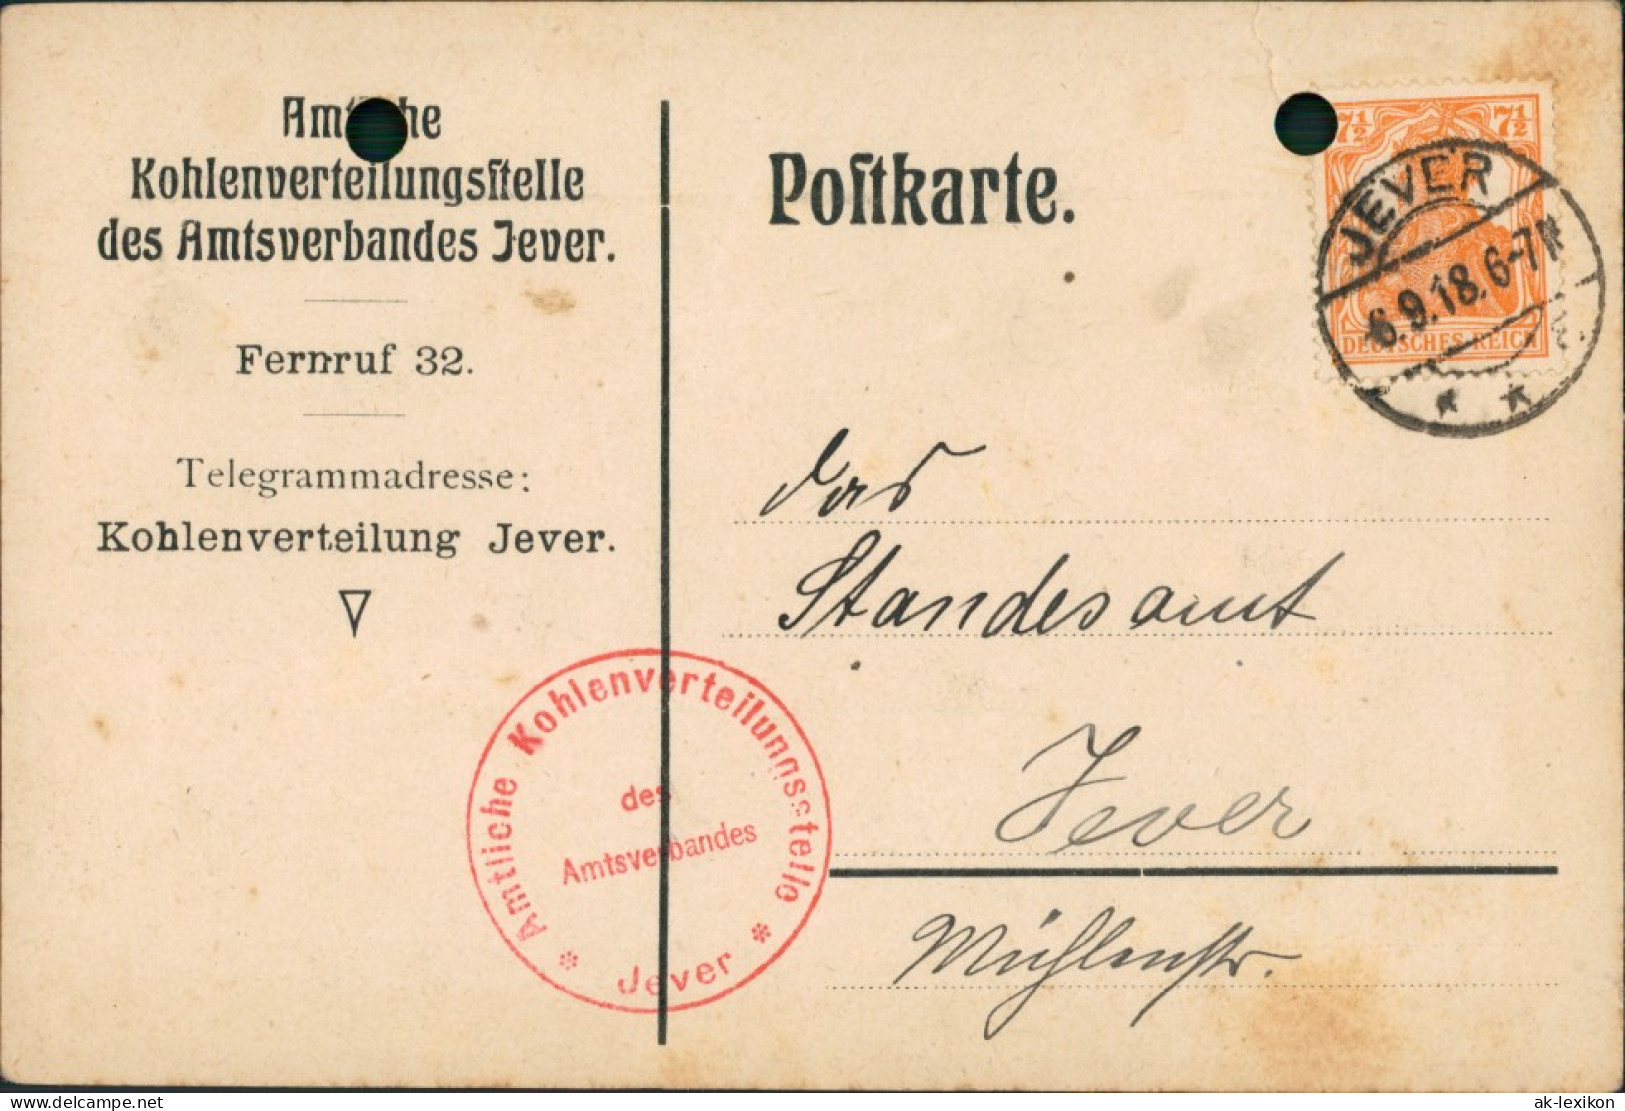 Jever Firmen Postkarte Kohlenverteilungsstelle Amtsverband 1918 Firmenstempel - Jever